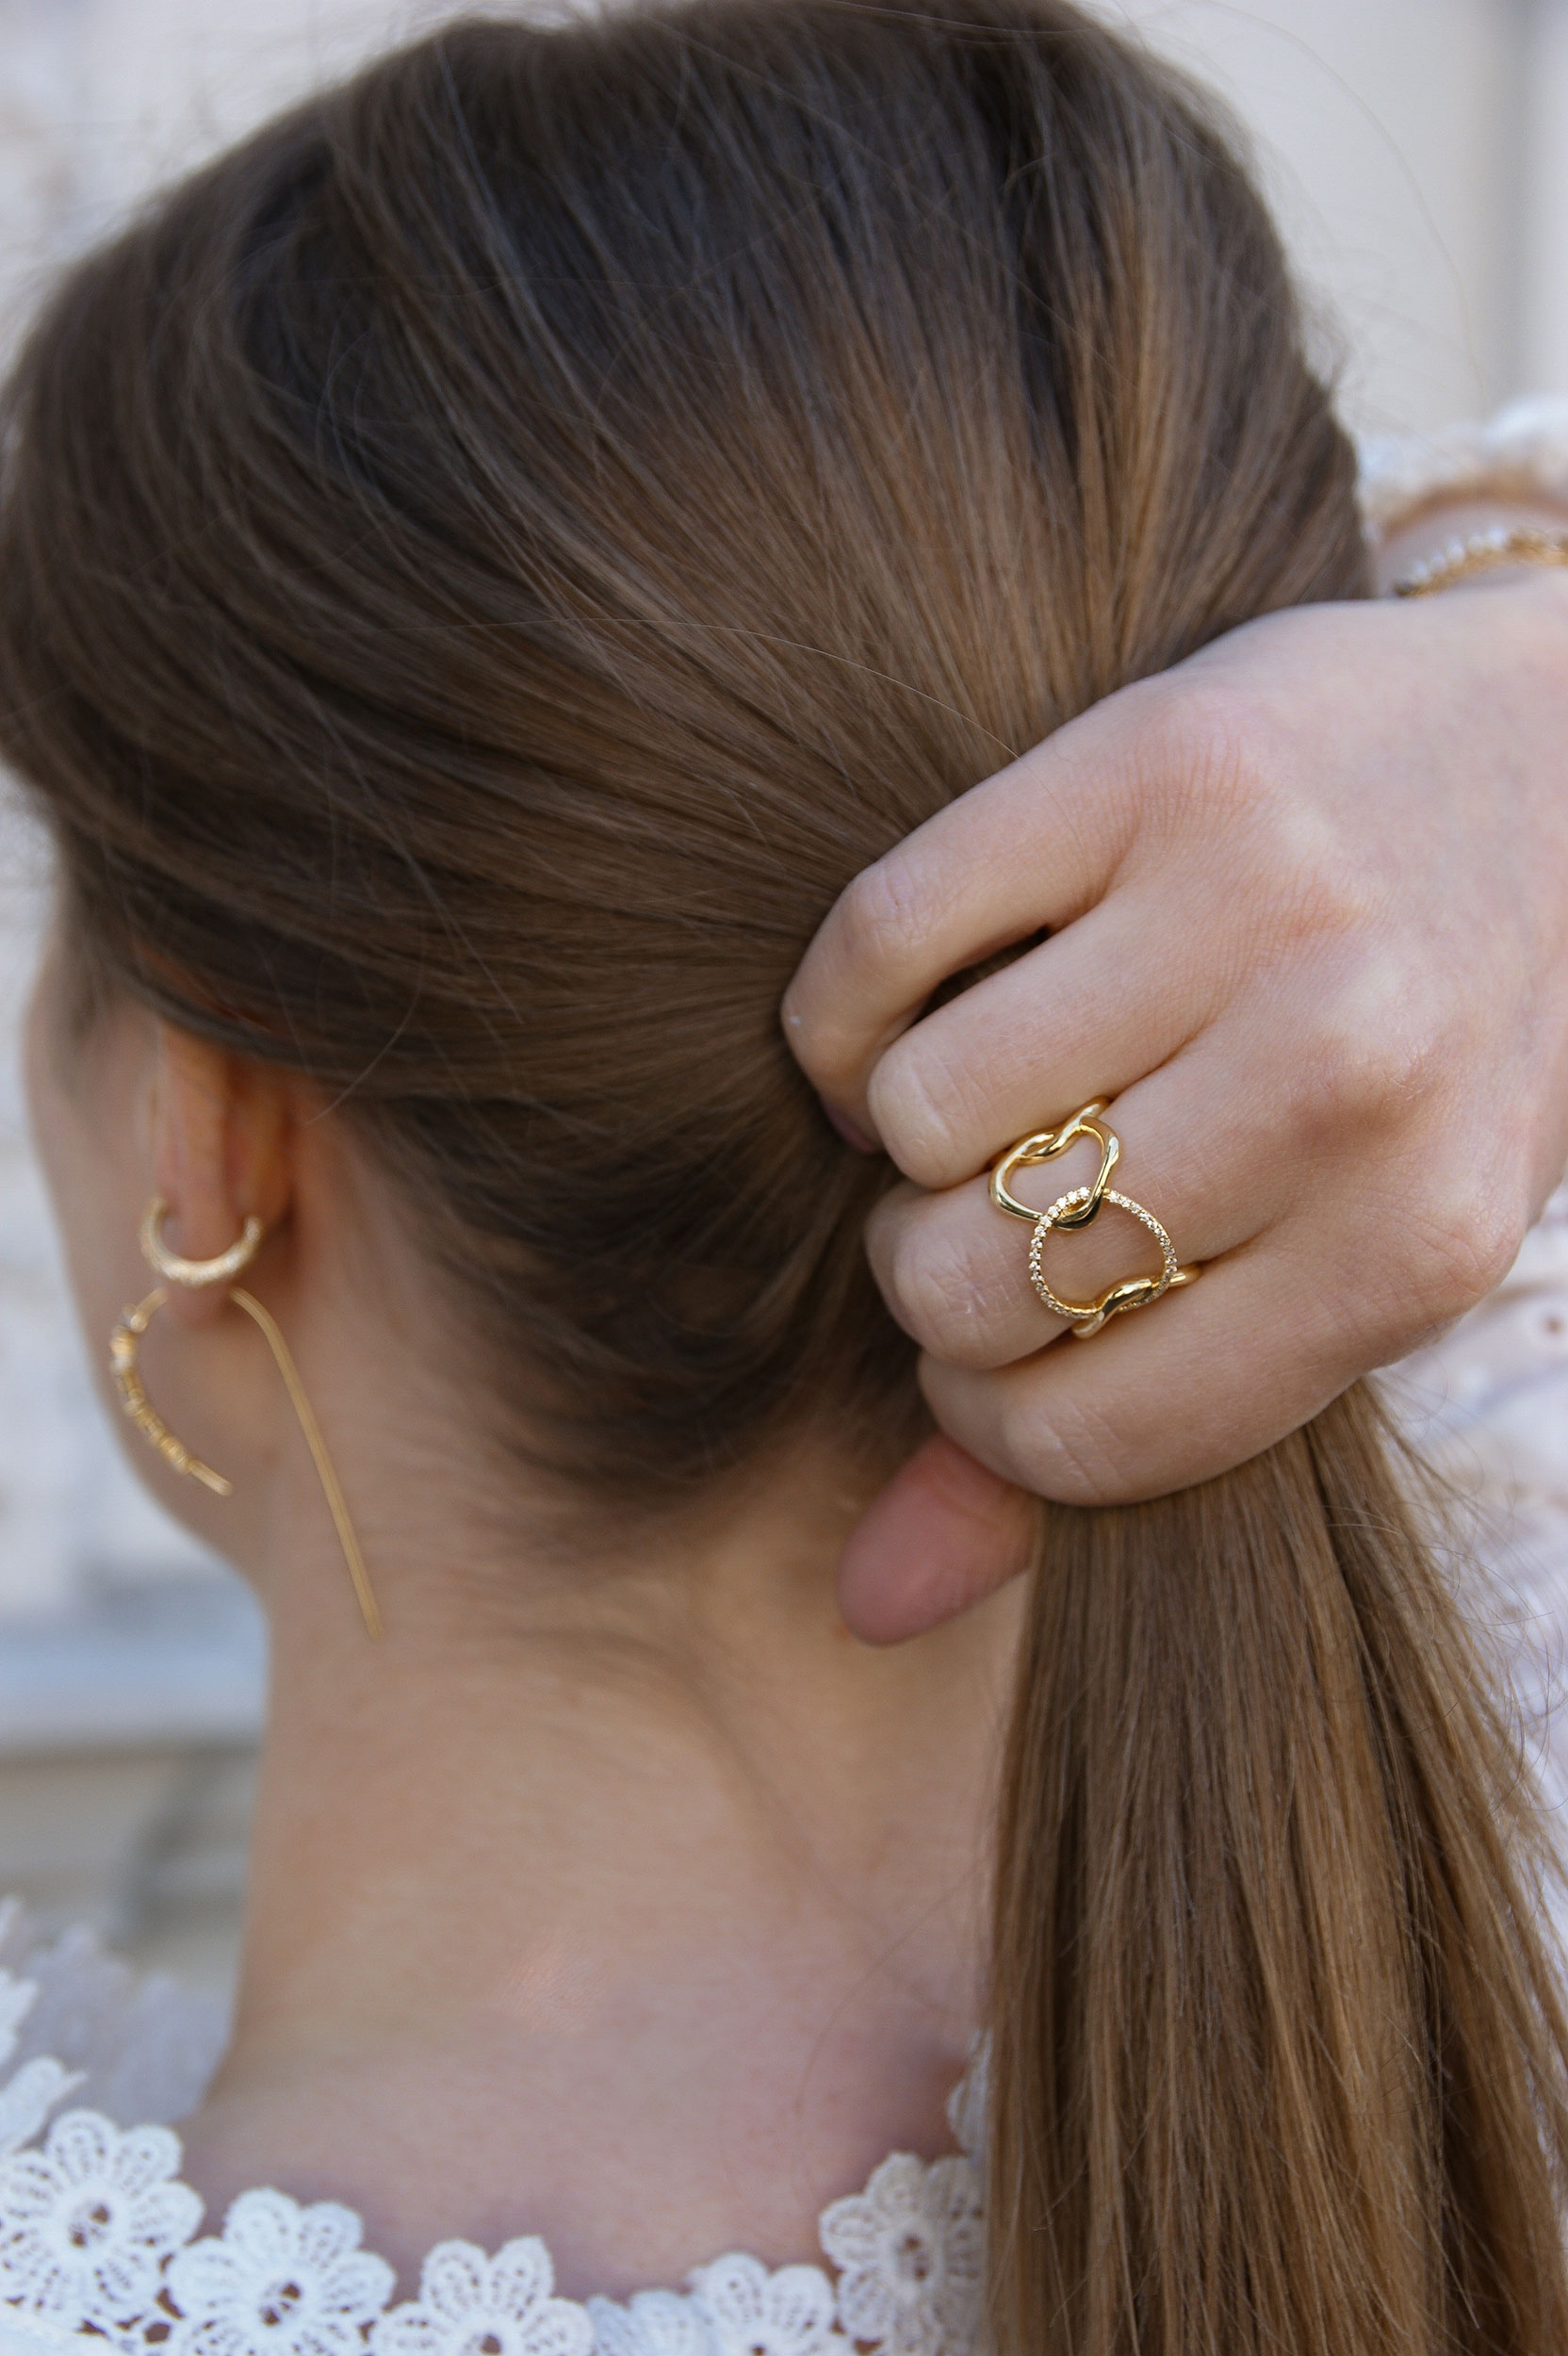 Xenox earrings jewelry earcandy